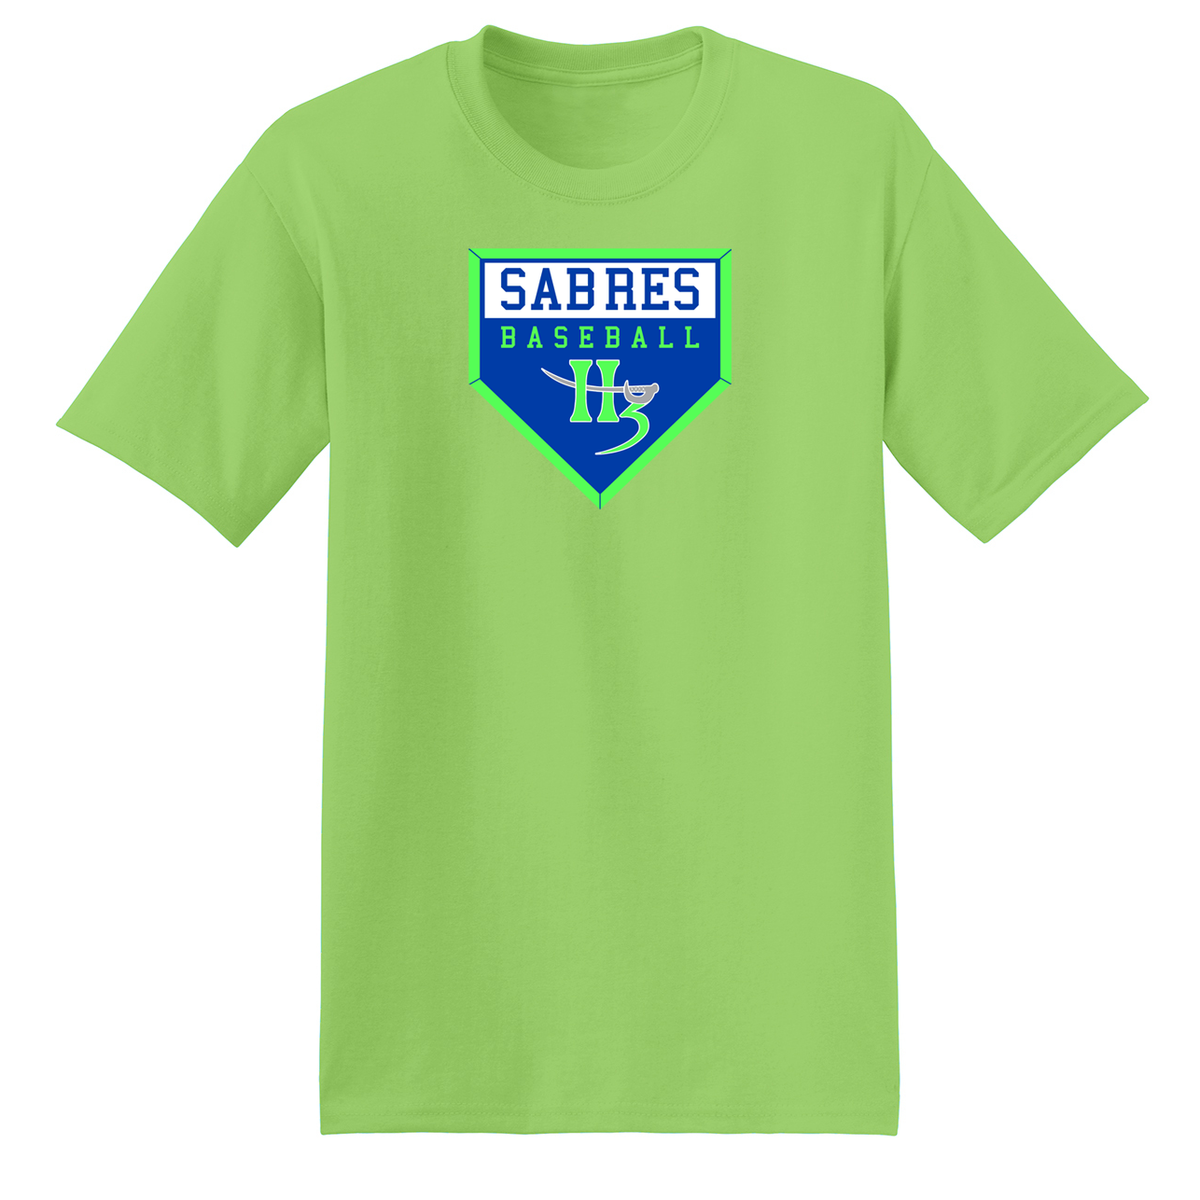 H3 Sabres Baseball T-Shirt